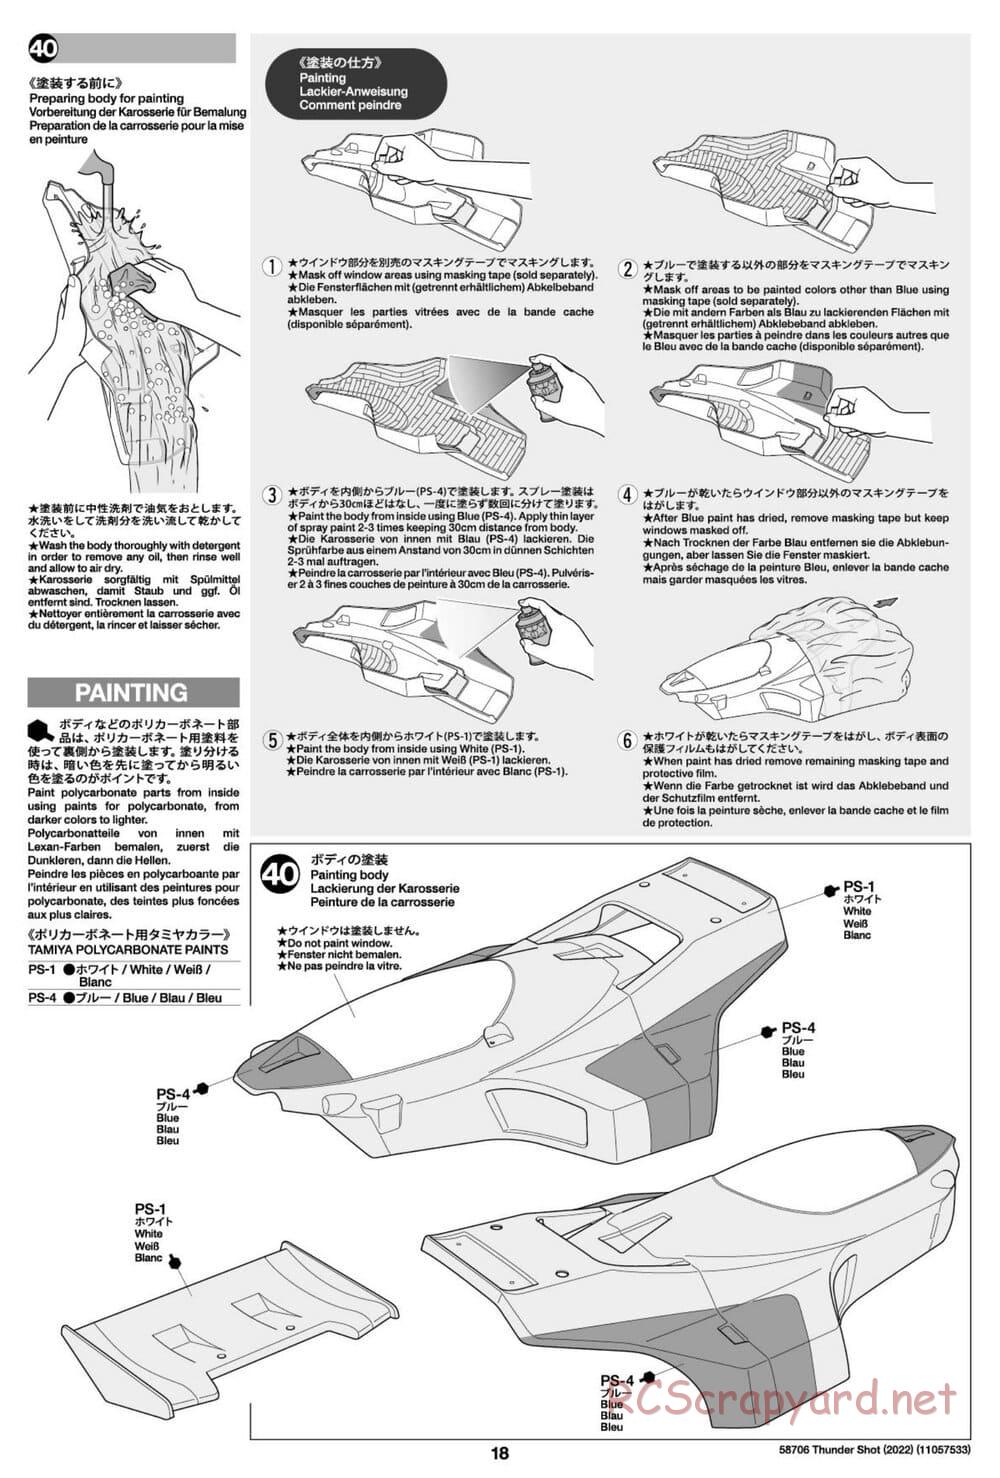 Tamiya - Thunder Shot (2022) - TS1/TS2 Chassis - Manual - Page 18